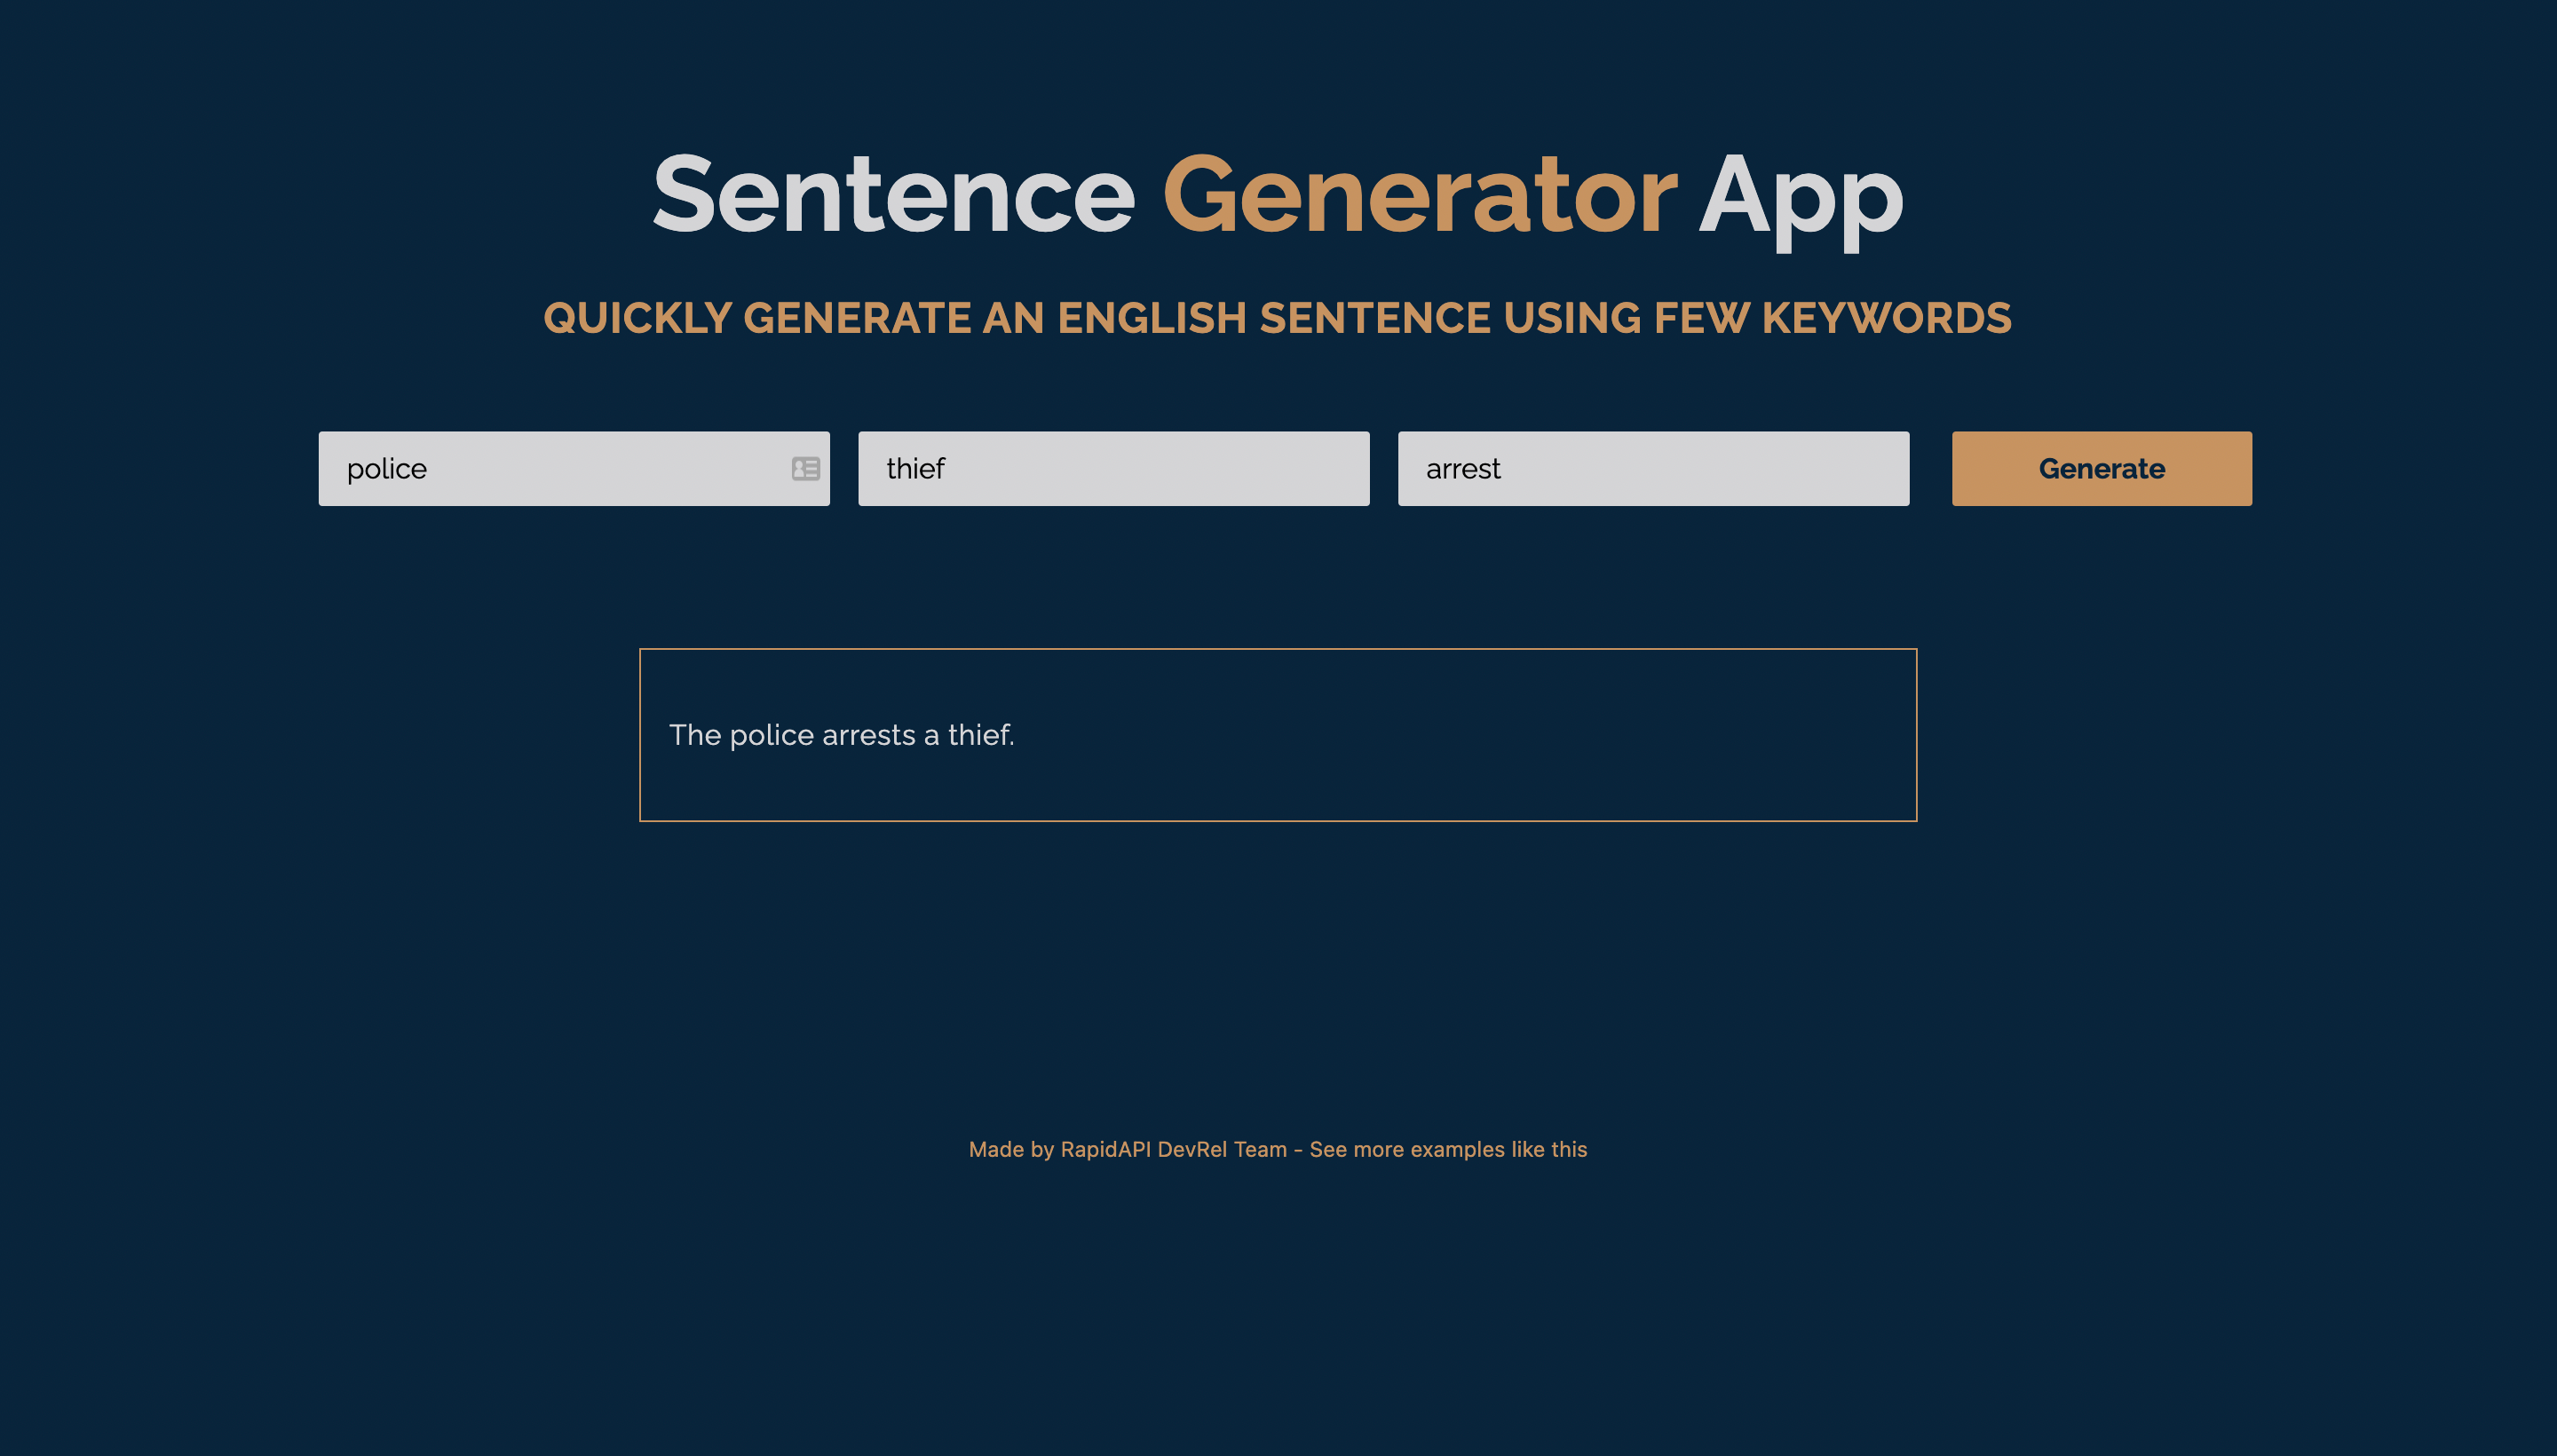 Sentence Generator App built with Next.js and Linguatools Sentence Generating API